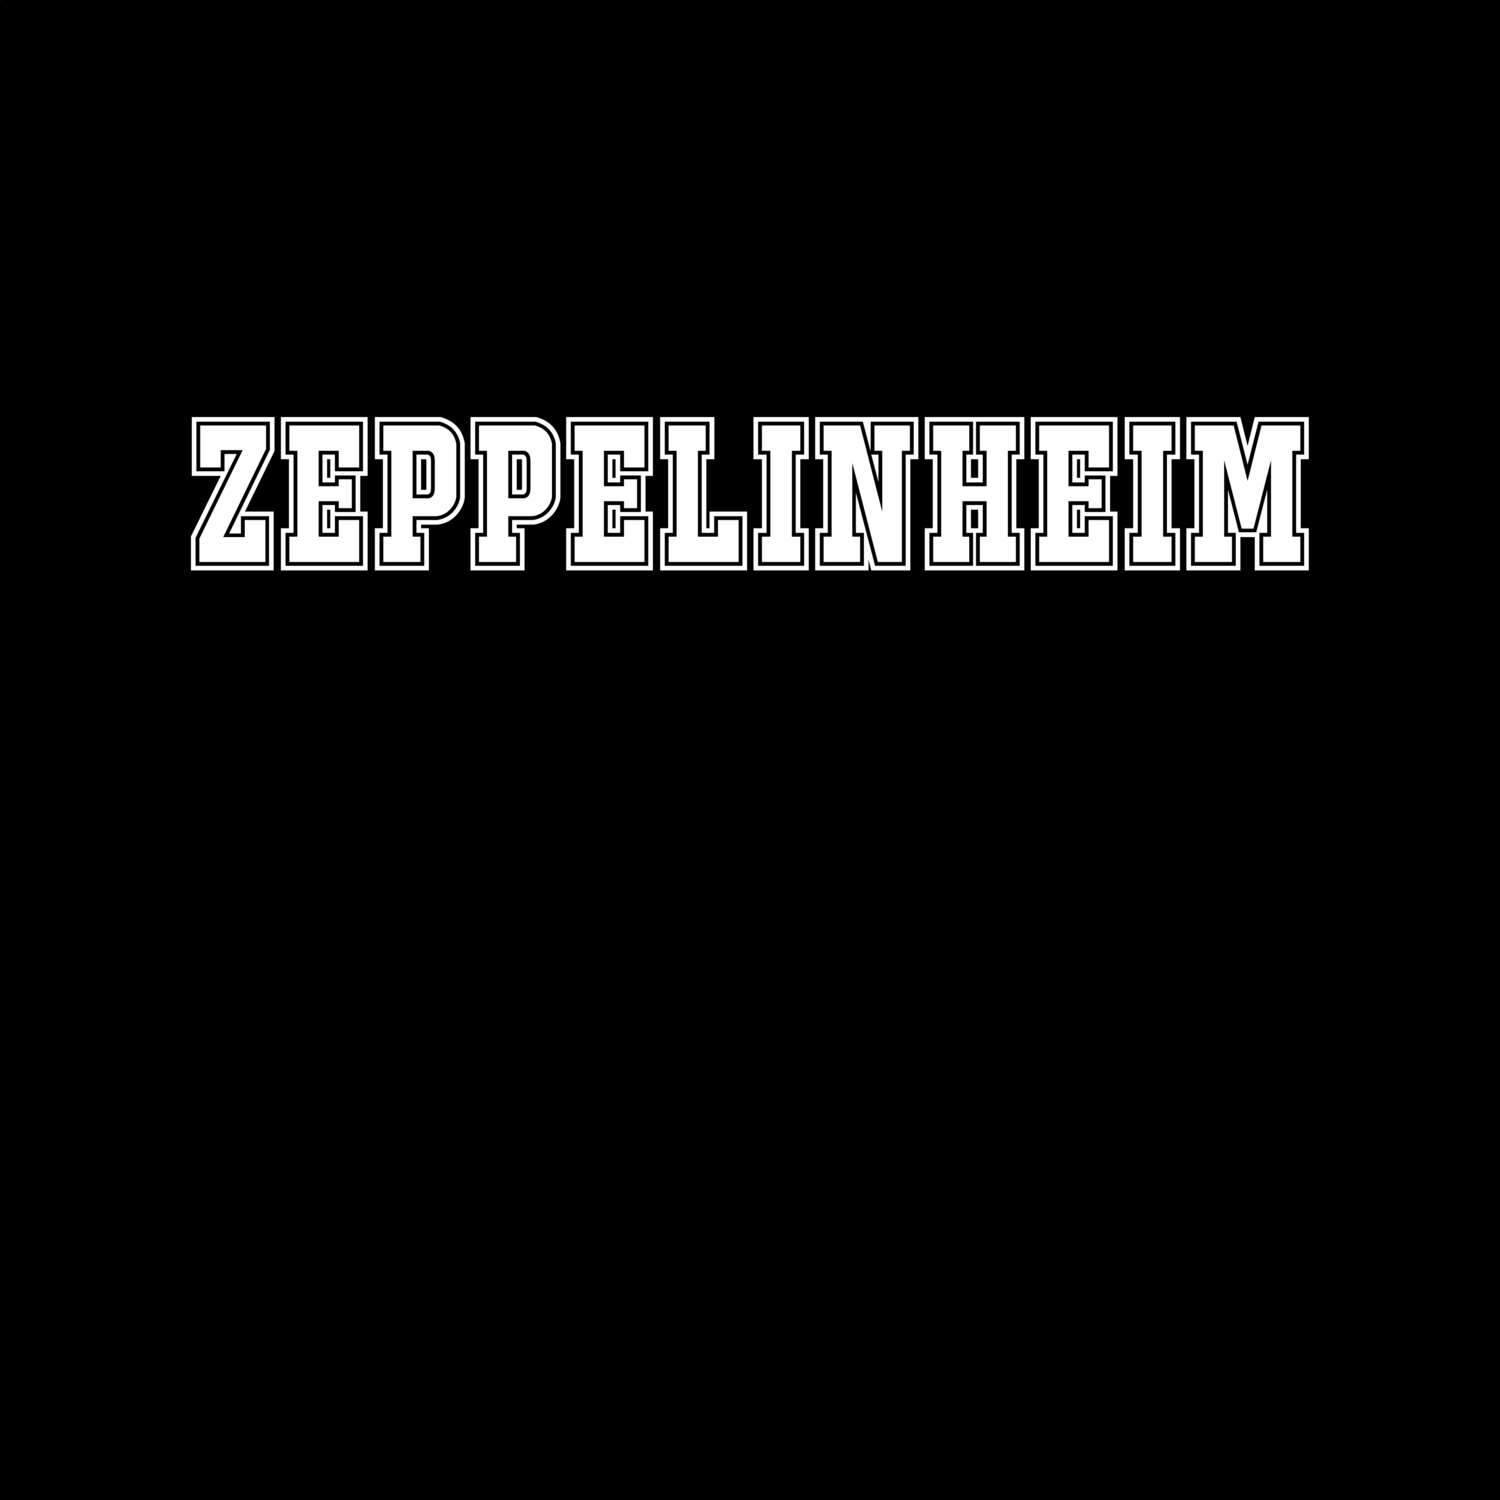 Zeppelinheim T-Shirt »Classic«